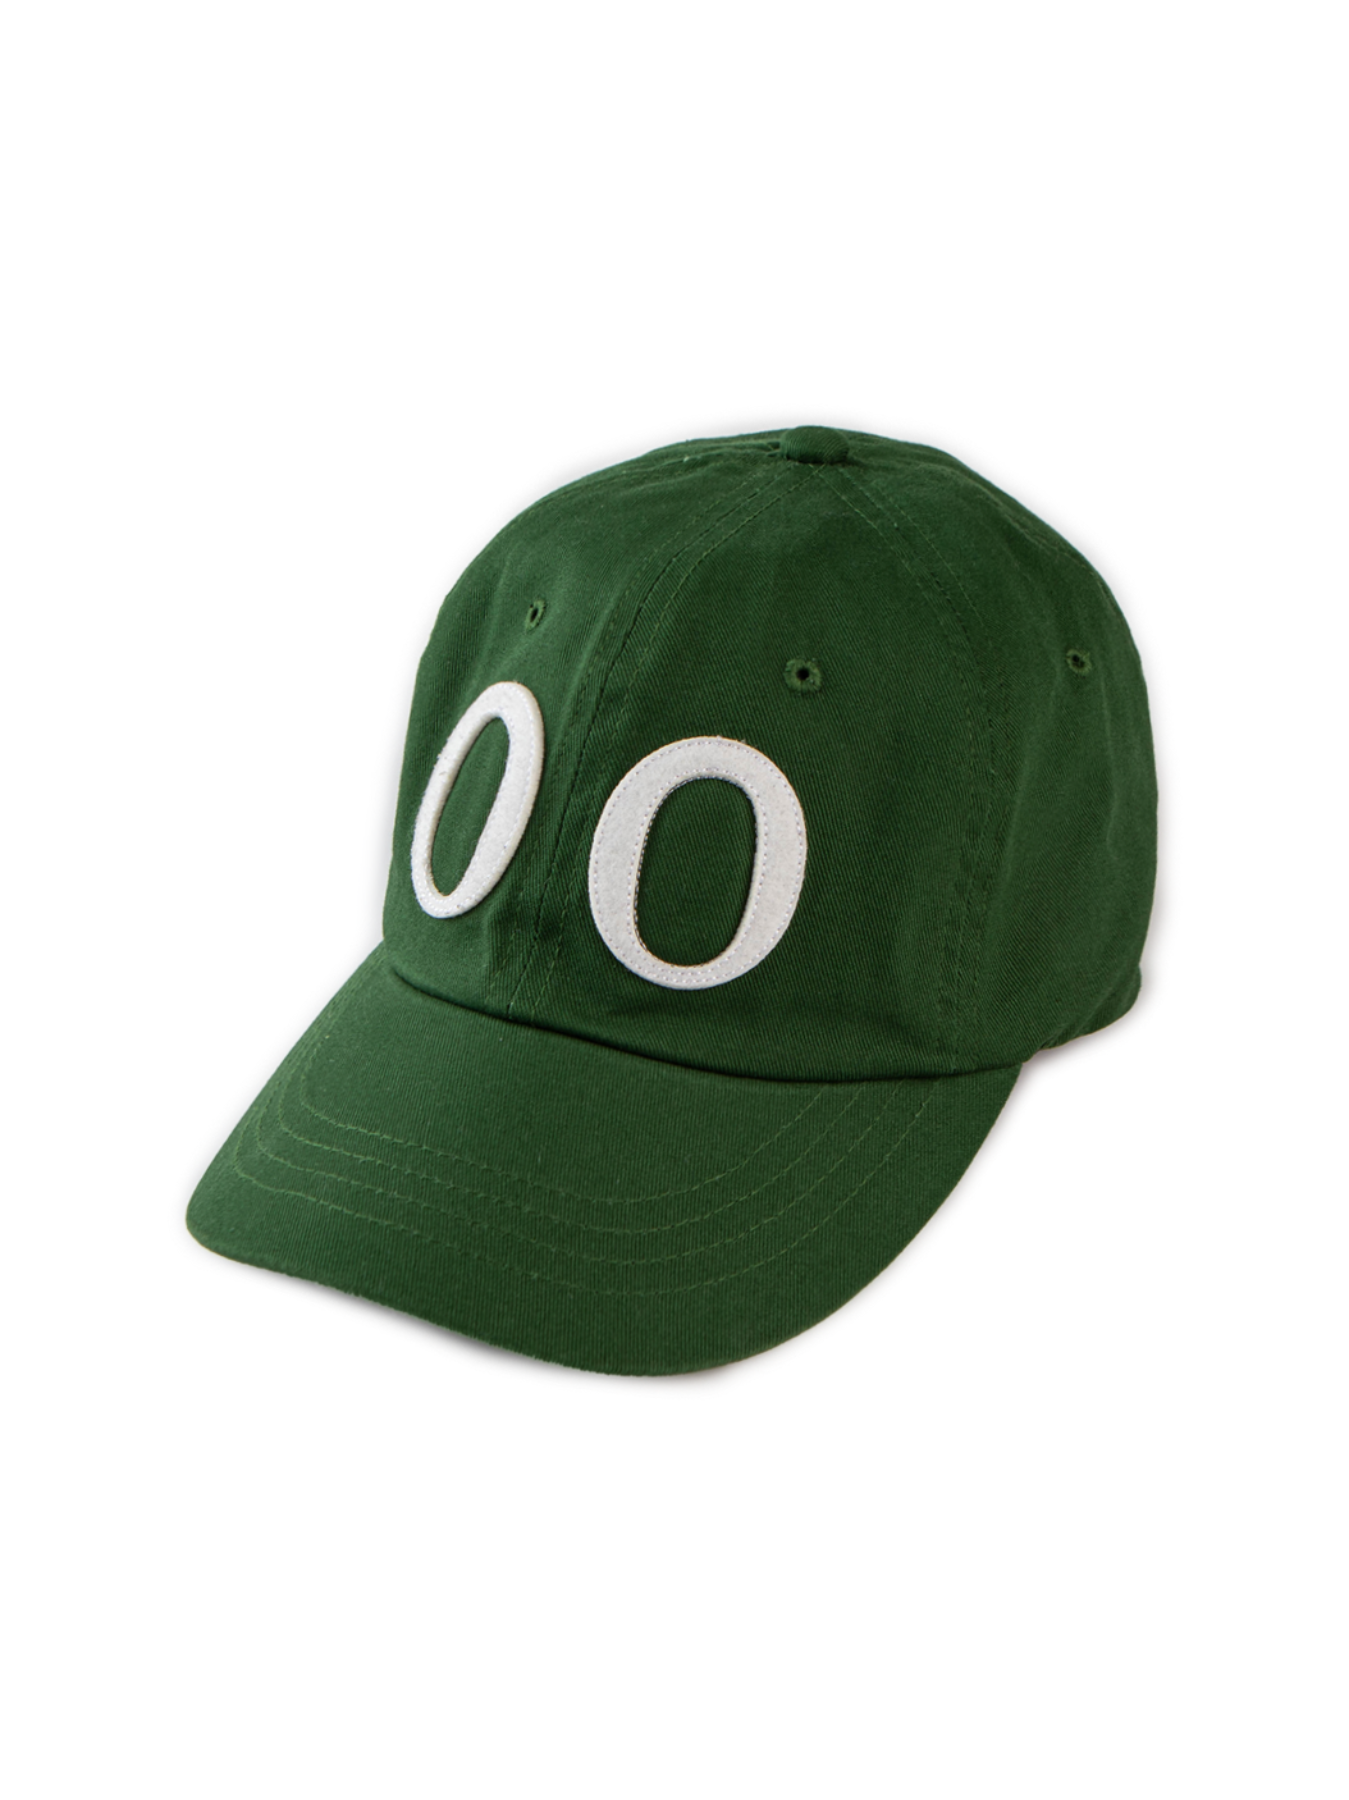 Symmetric O-logo cap #16 [green]